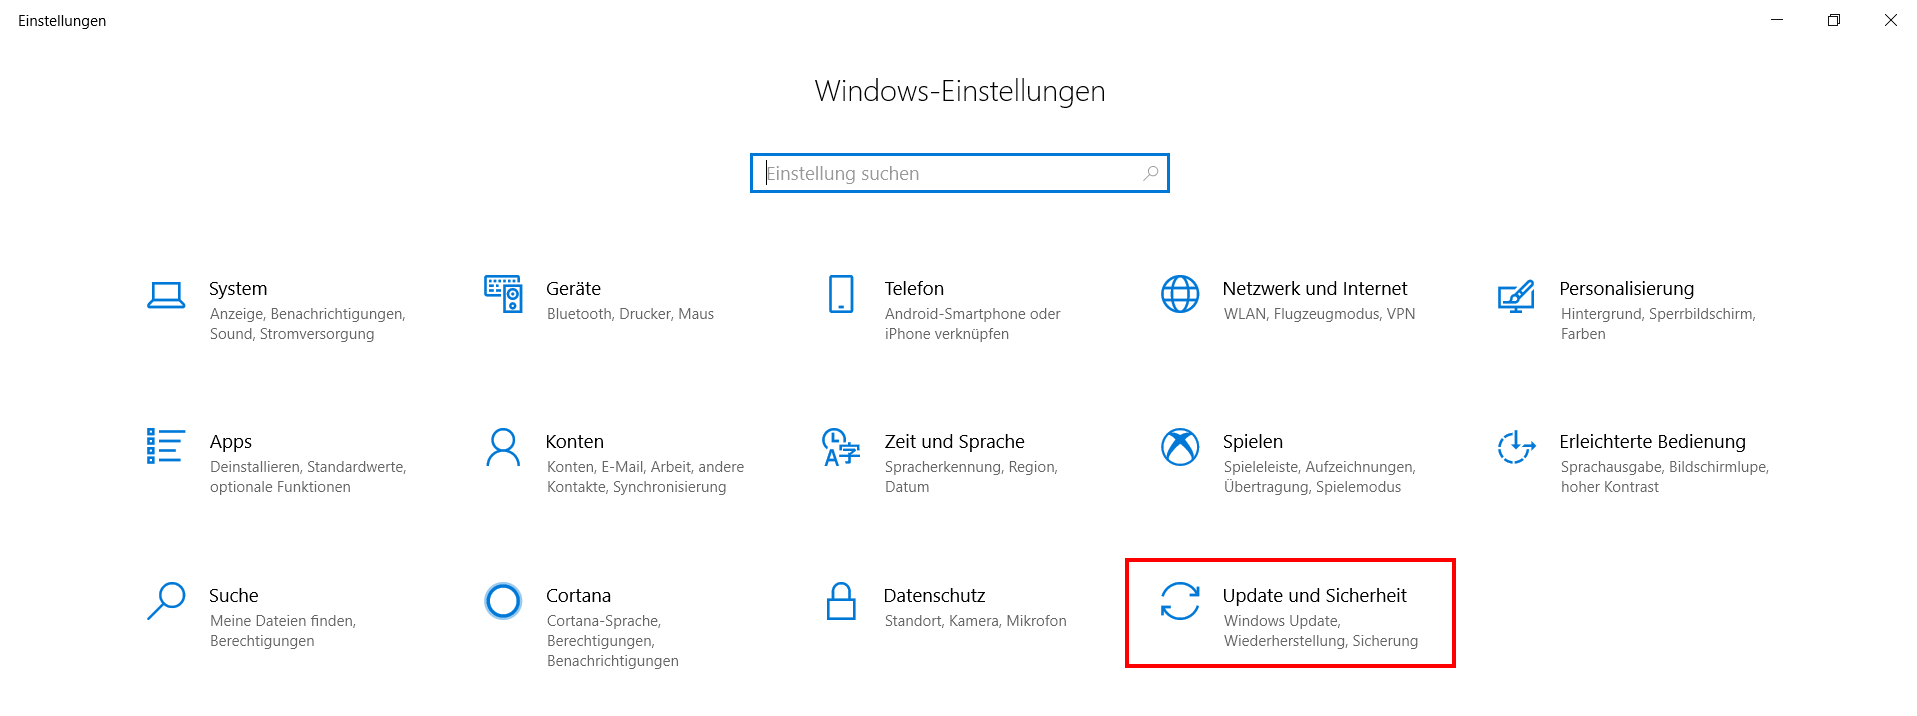 Rubrik „Update und Sicherheit“ in den Windows-Einstellungen